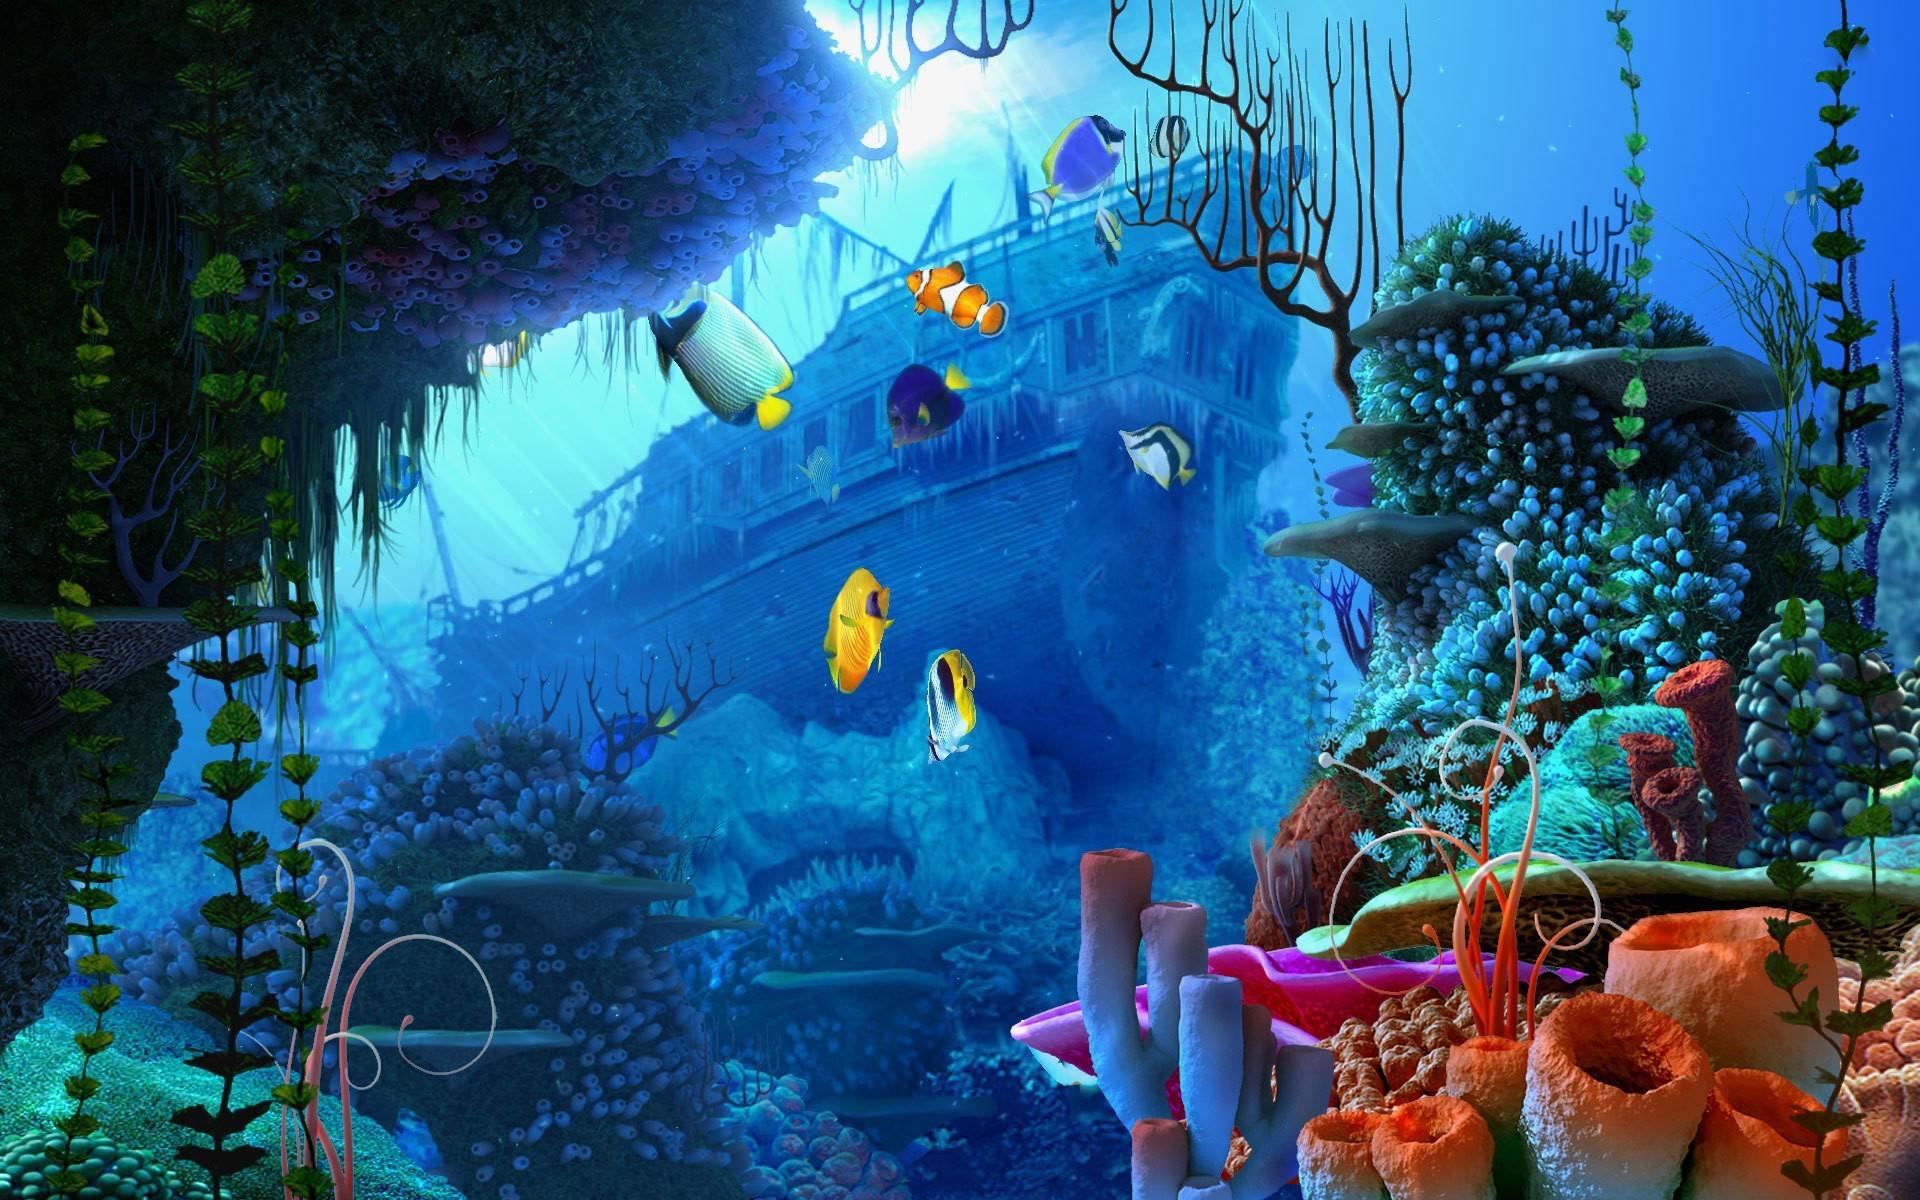 Hình nền động vật dưới nước cho PC: Đẹp và rõ nét trên màn hình máy tính của bạn, hình nền động vật dưới nước này sẽ mang đến cho bạn cảm giác thư thái và sảng khoái. Trải nghiệm cuộc sống dưới đại dương trong tầm nhìn rộng lớn của bạn, và thực sự cảm thấy được rằng đó thật là một cuộc phiêu lưu tuyệt vời.